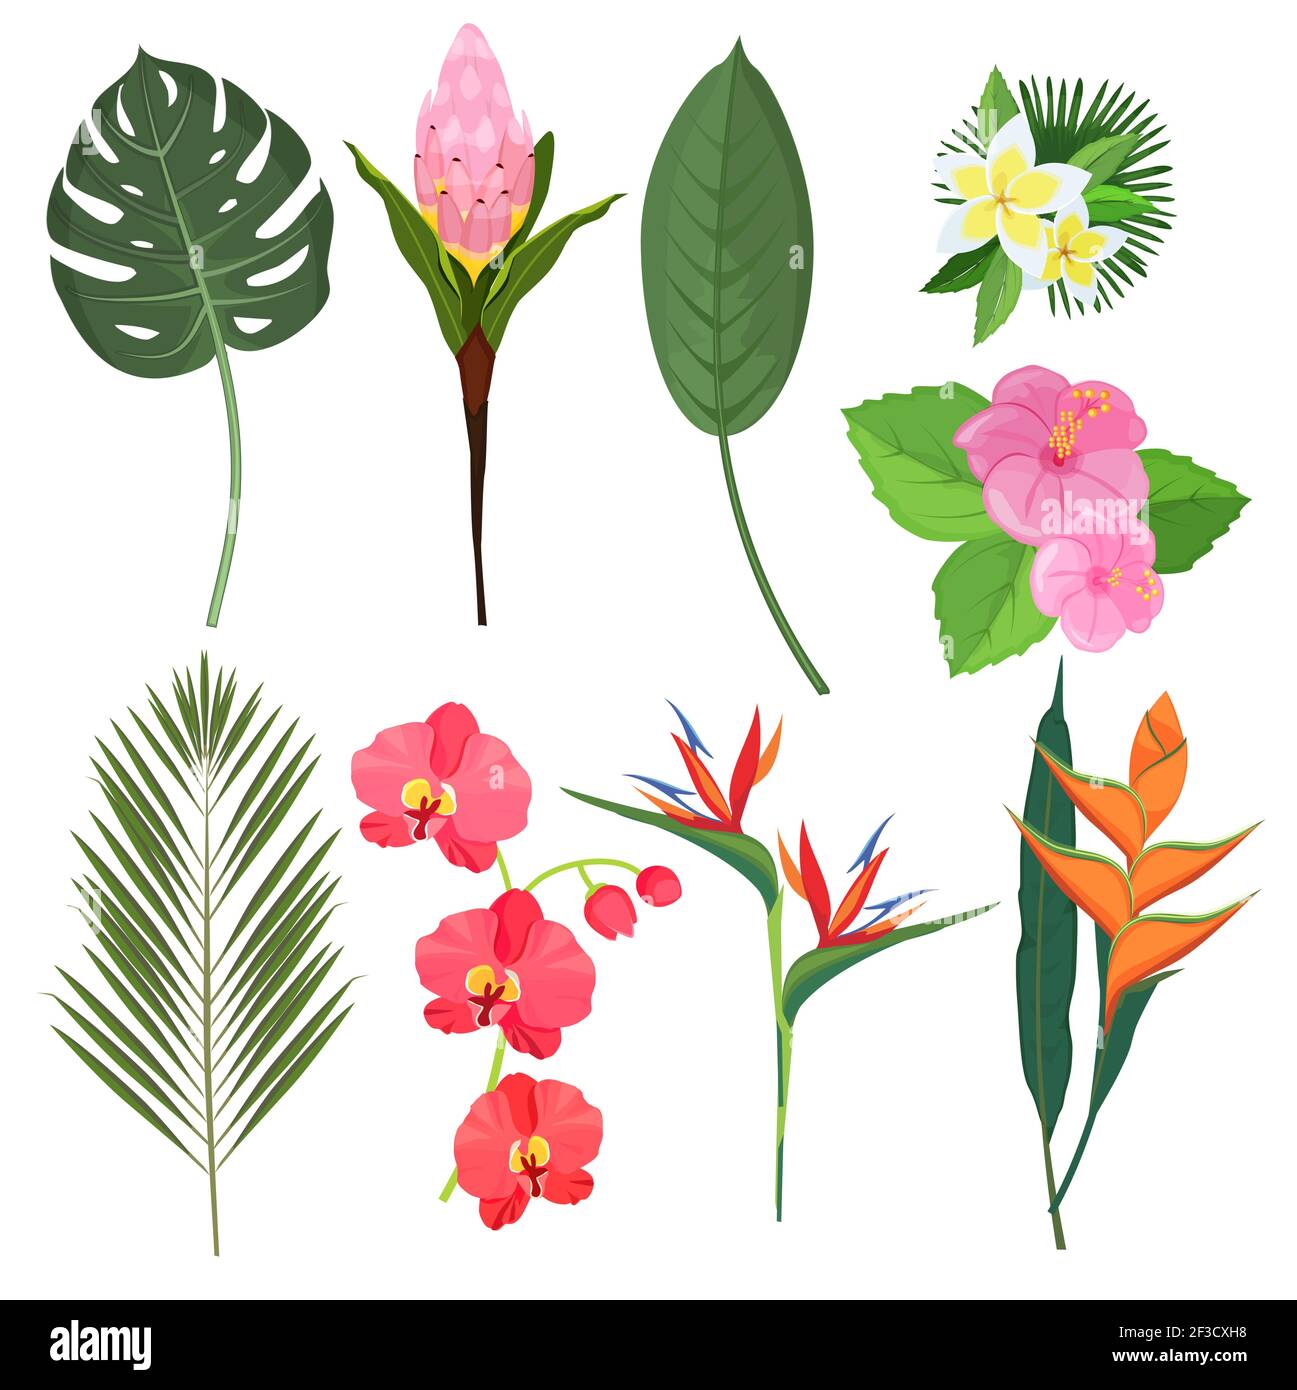 Fleurs tropicales. Bouquets exotiques de plantes polynésiennes Bali décoration plantes vecteur fleurs Illustration de Vecteur